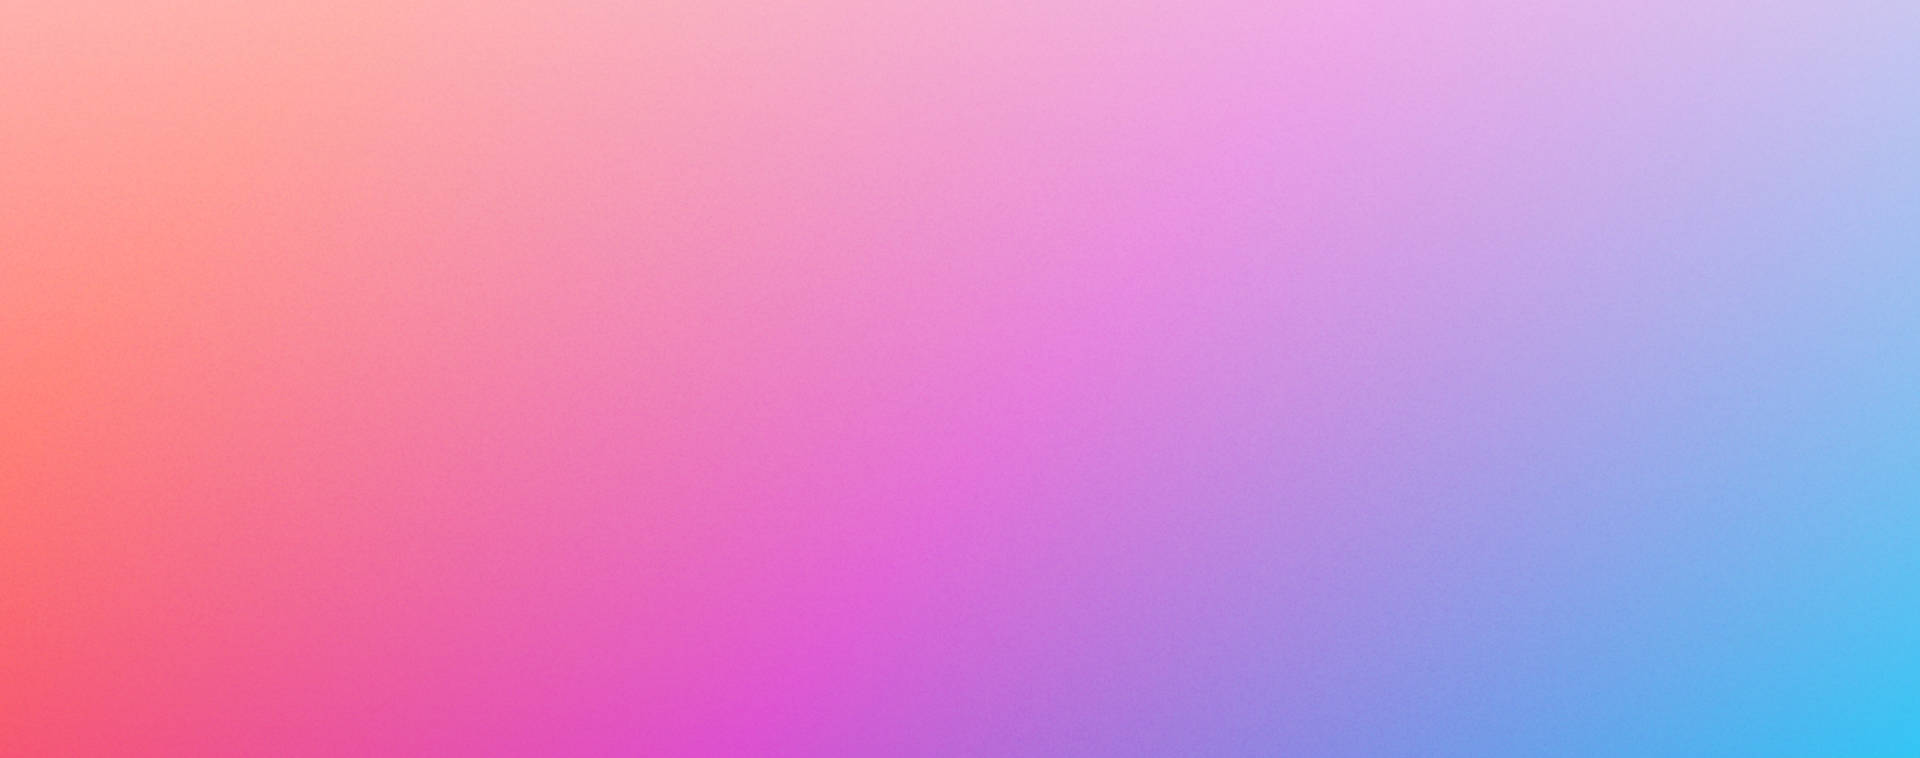 Pastel Gradient Macbook Air Wallpaper